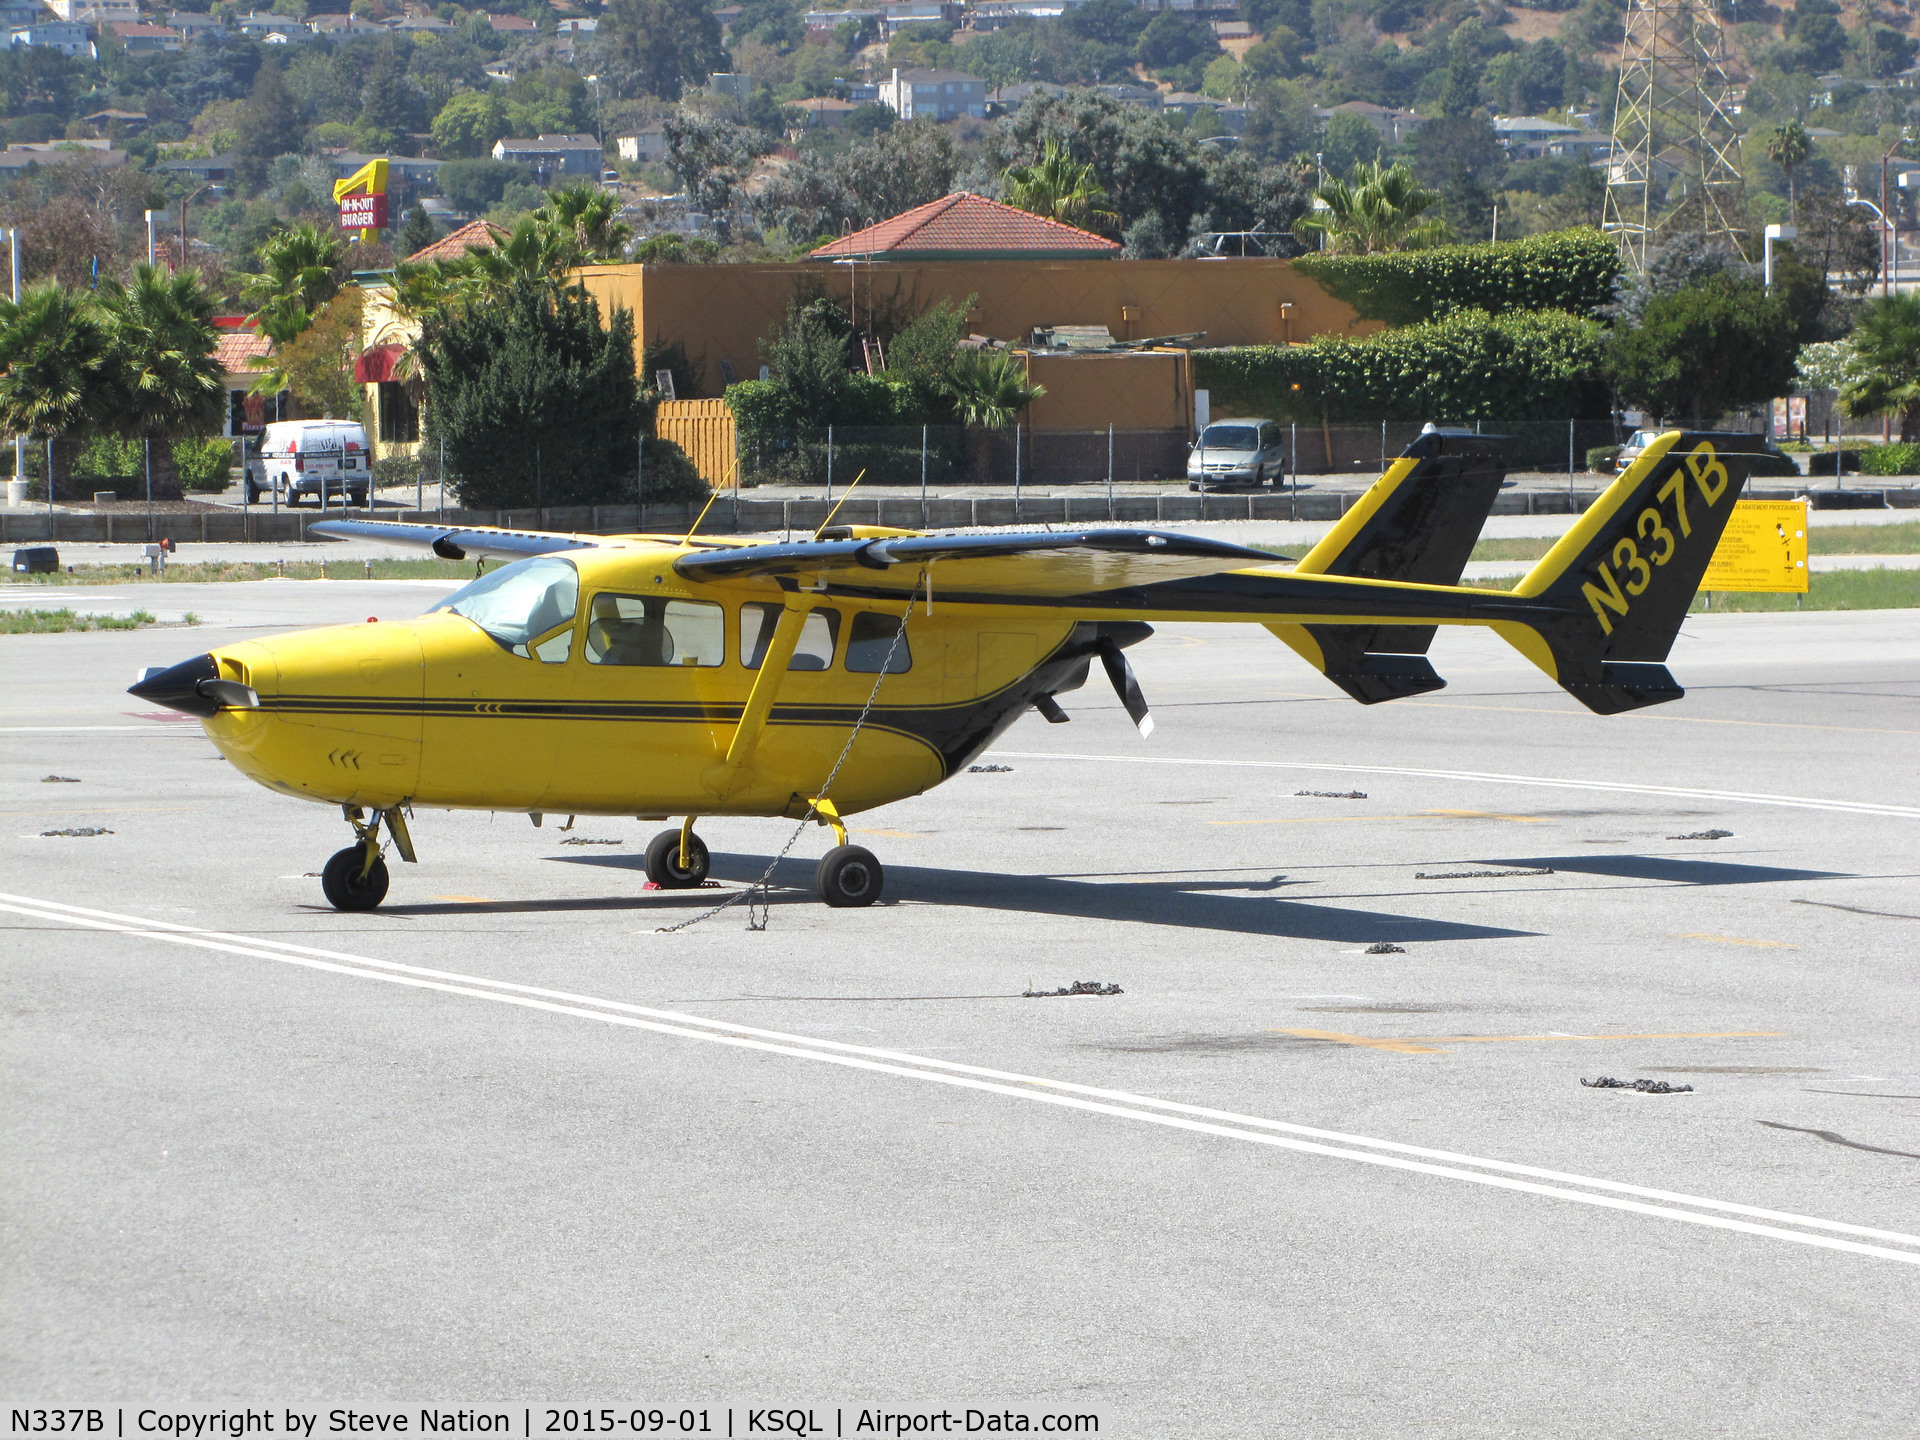 N337B, 1967 Cessna T337C Turbo Super Skymaster C/N 337-0775, Colorful 1967 Cessna T337C @ @ San Carlos Airport, CA